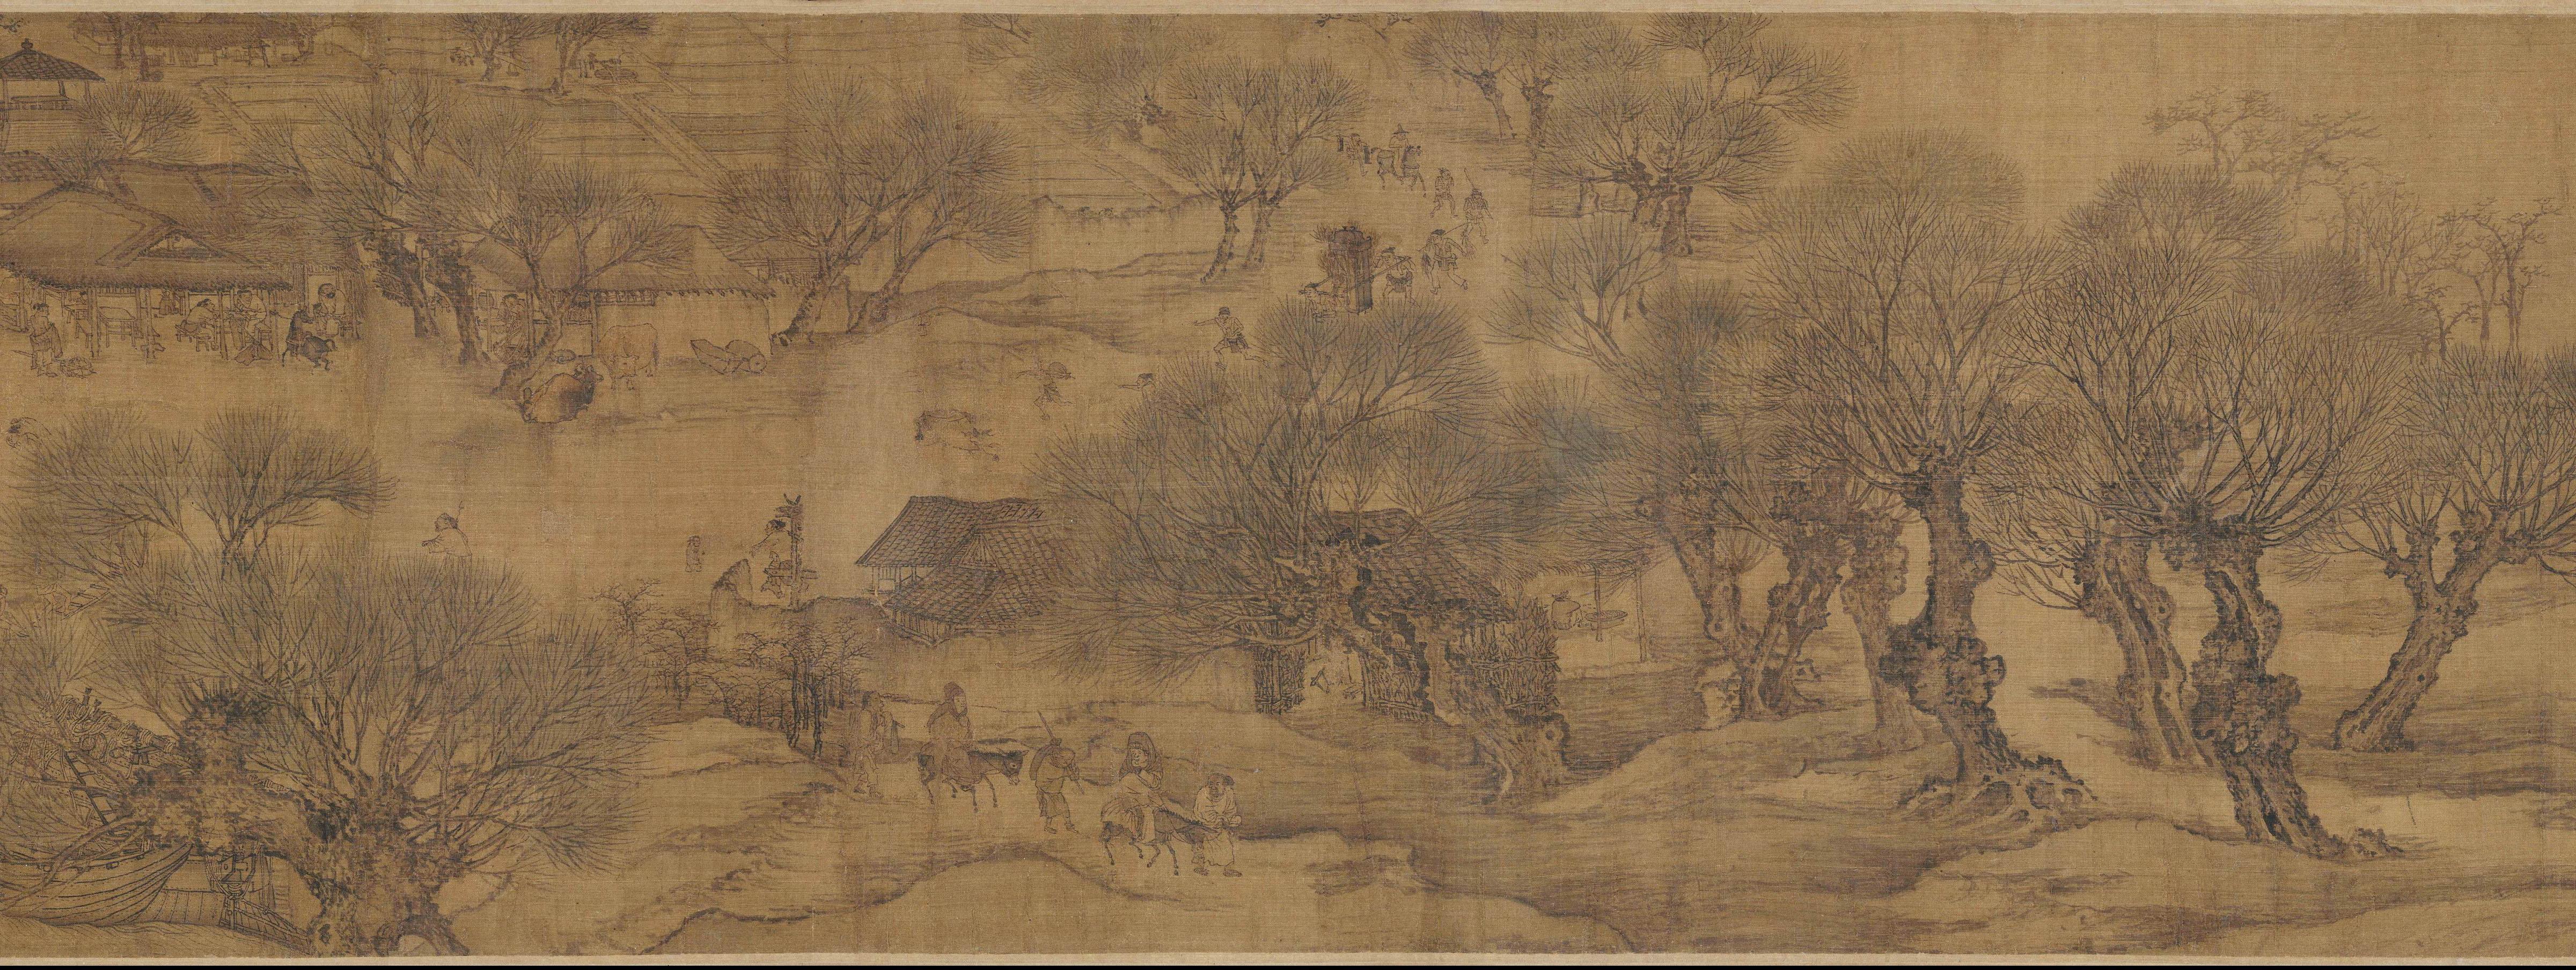 Qingming Festival Wallpapers